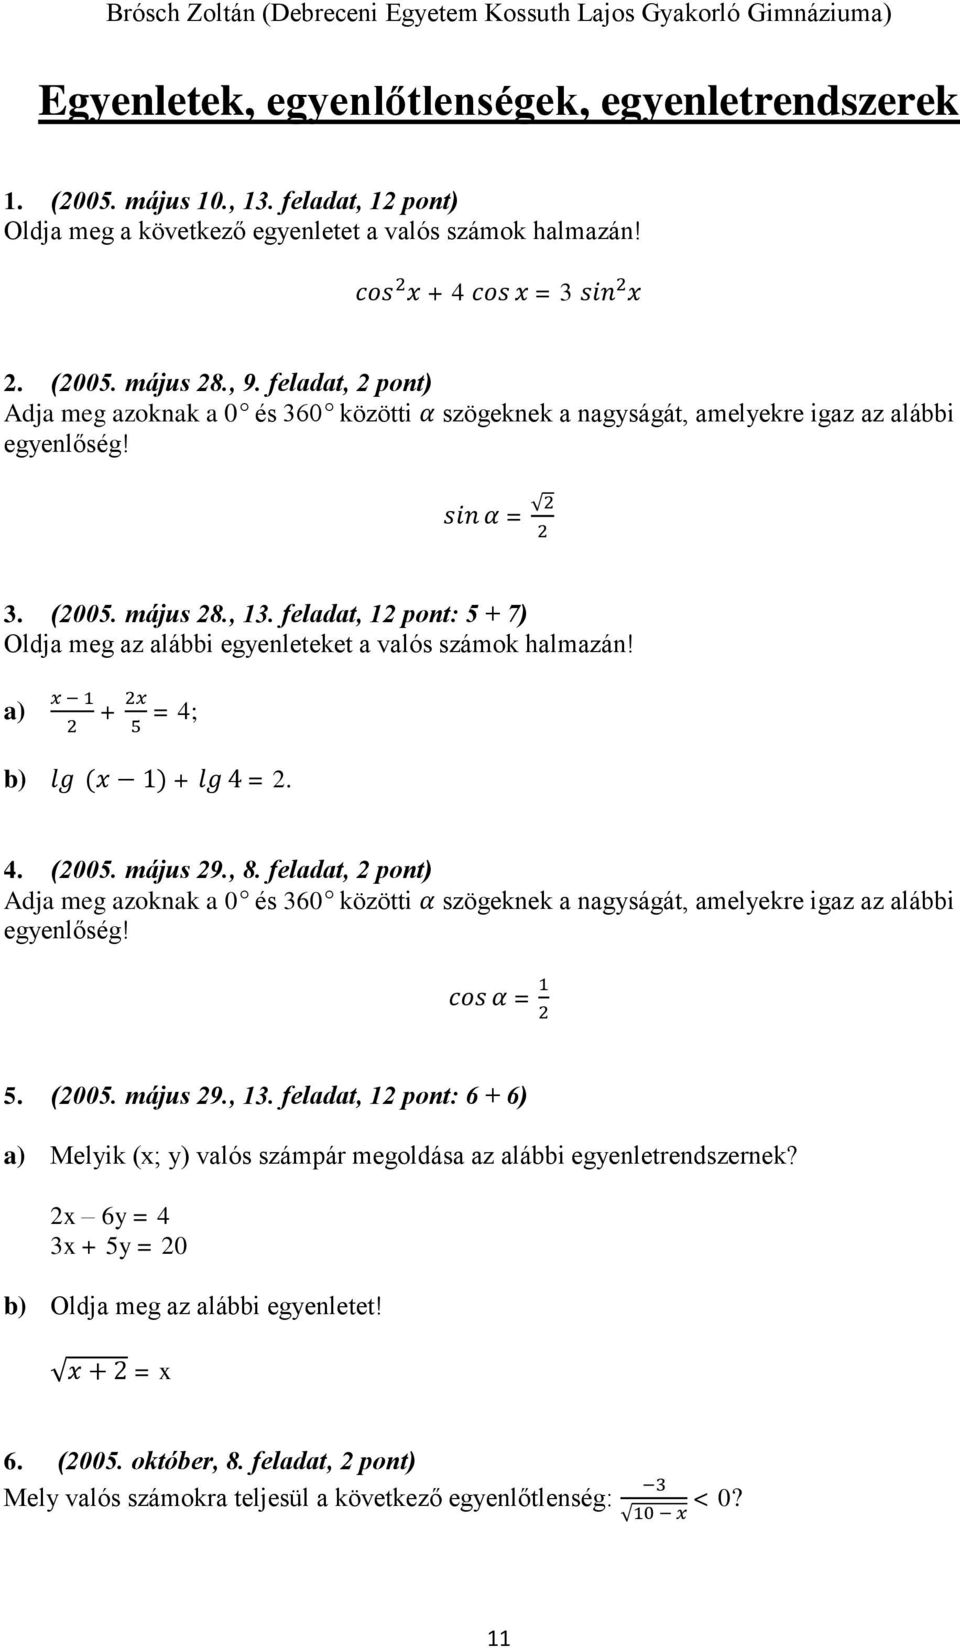 feladat, 12 pont: 5 + 7) Oldja meg az alábbi egyenleteket a valós számok halmazán! a) x 1 2 + 2x 5 = 4; b) lg (x 1) + lg 4 = 2. 4. (2005. május 29., 8.